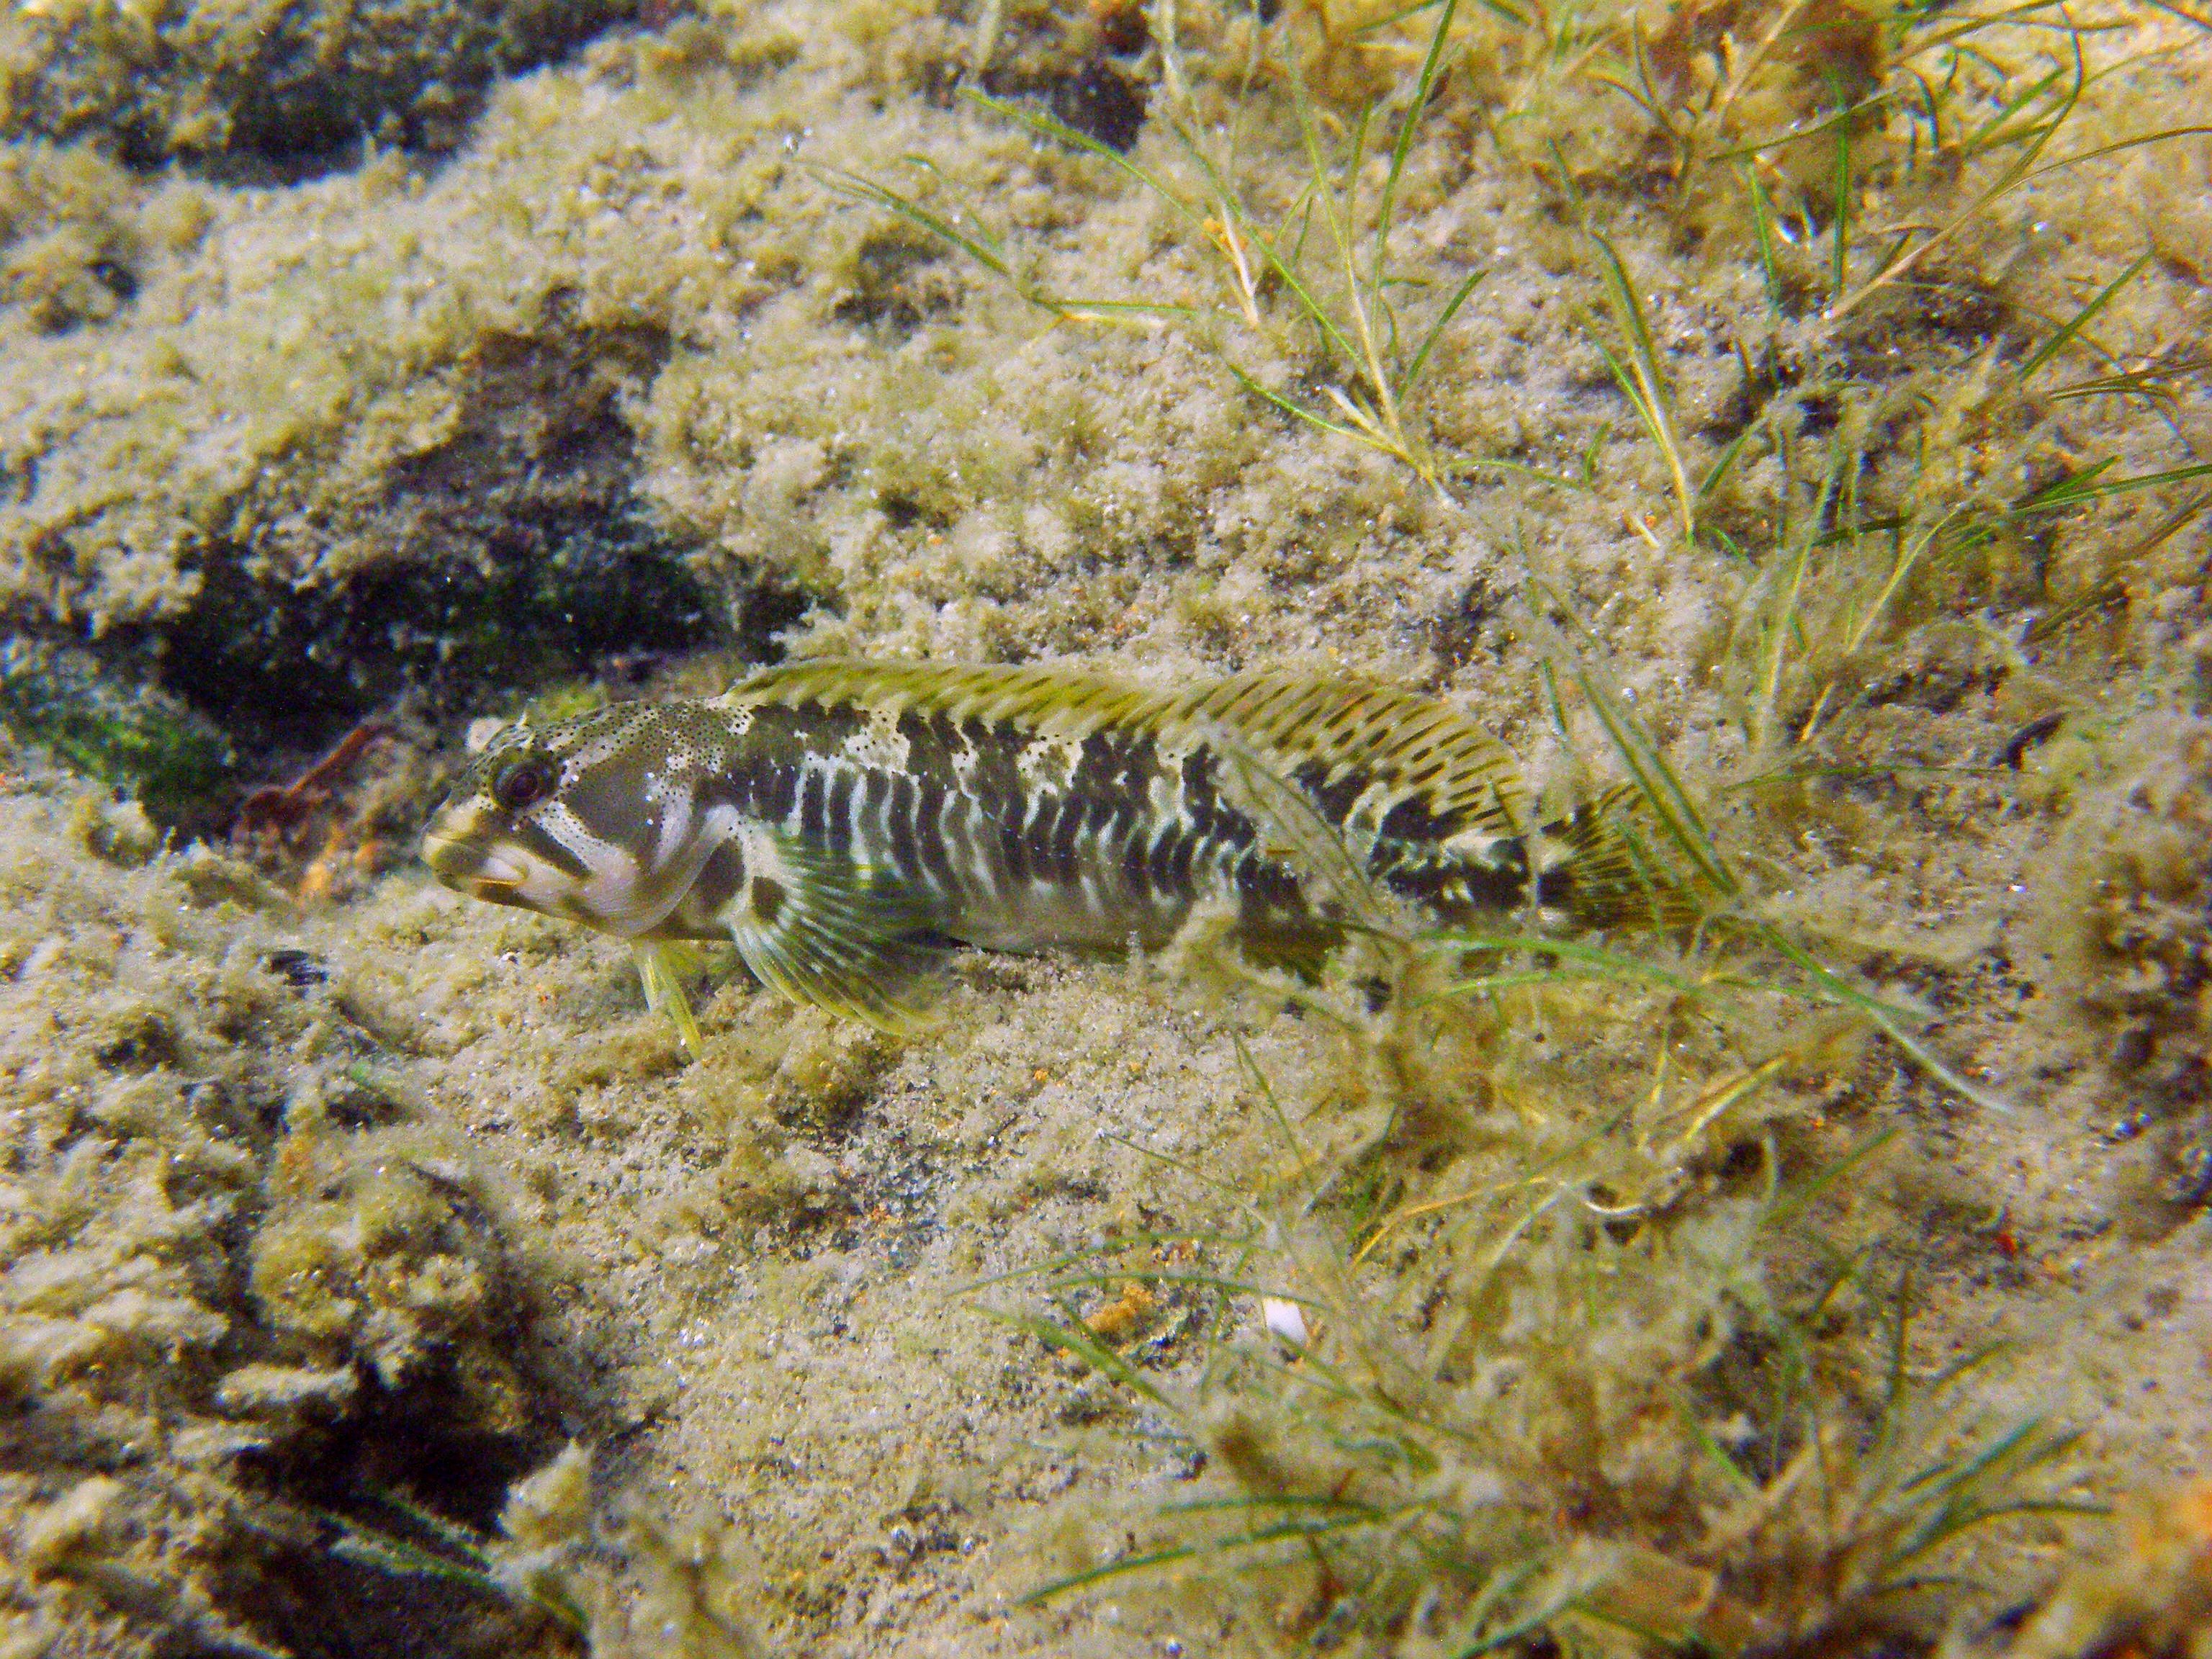 Auf dem Grund des Lago Maggiore versteckt sich ein seltener Süsswasserschleimfisch (Salaria fluviatilis). Forschende des Projet Lac haben begonnen, die Fische direkt in ihrem Lebensraum zu beobachten, um die Artenvielfalt und ihre Dynamik besser zu verstehen. ©️ Eawag, Ole Seehausen